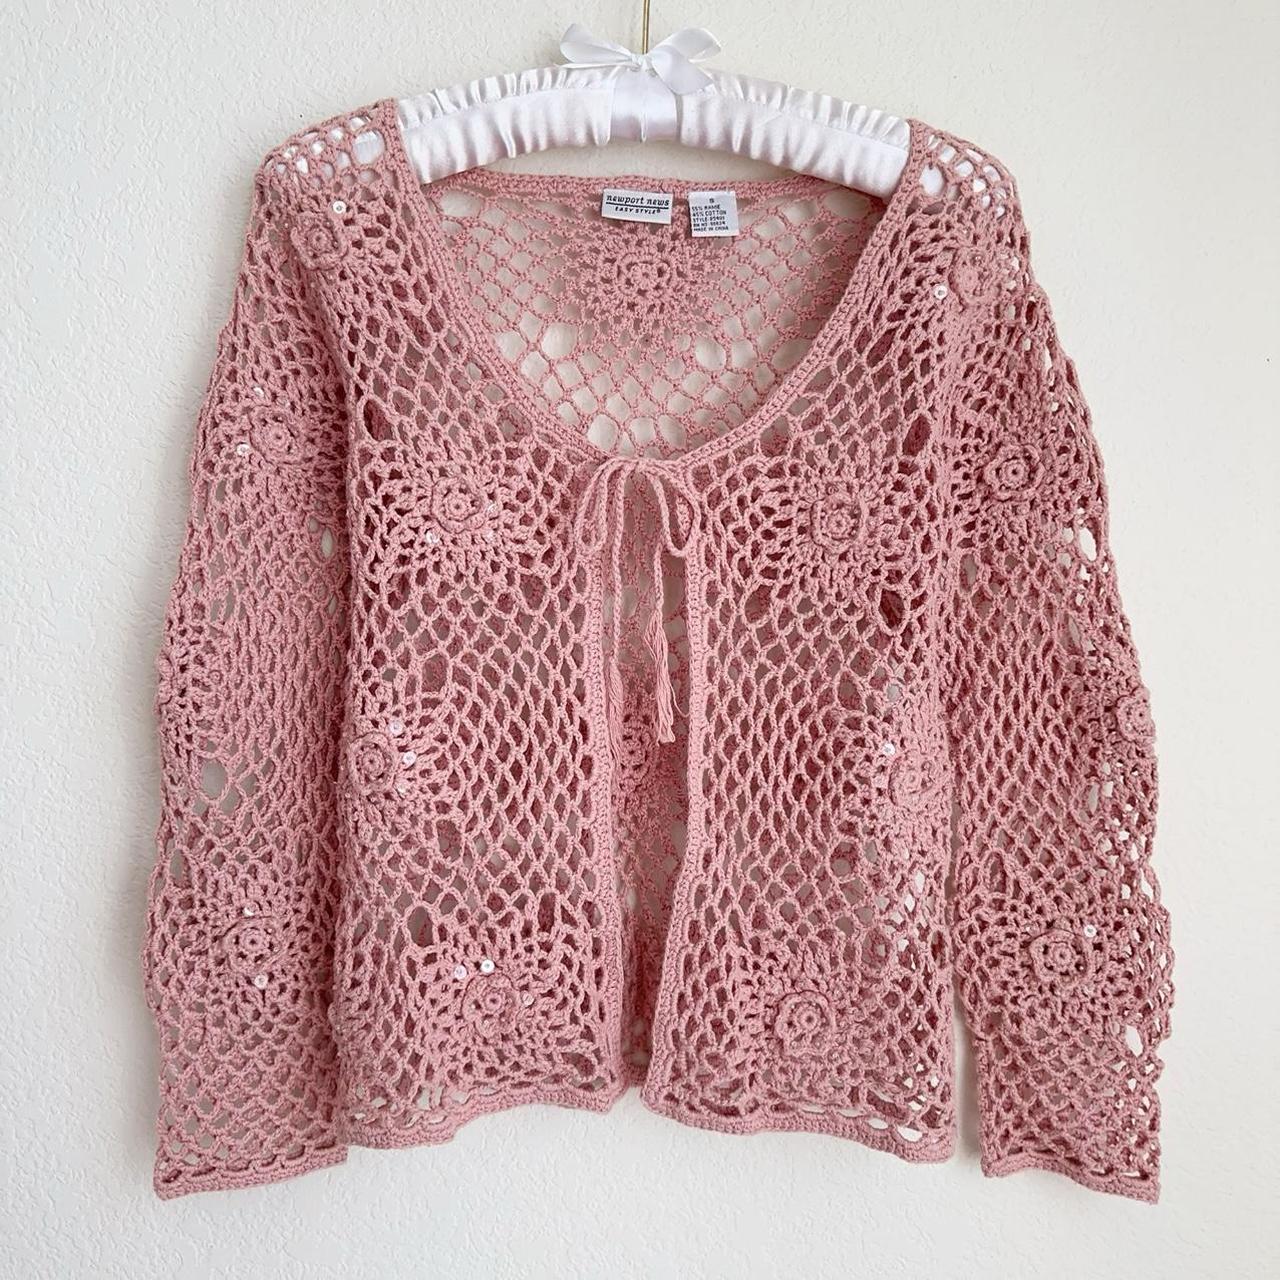 Vintage dusty pink crochet cardigan ♡ has sequin... - Depop